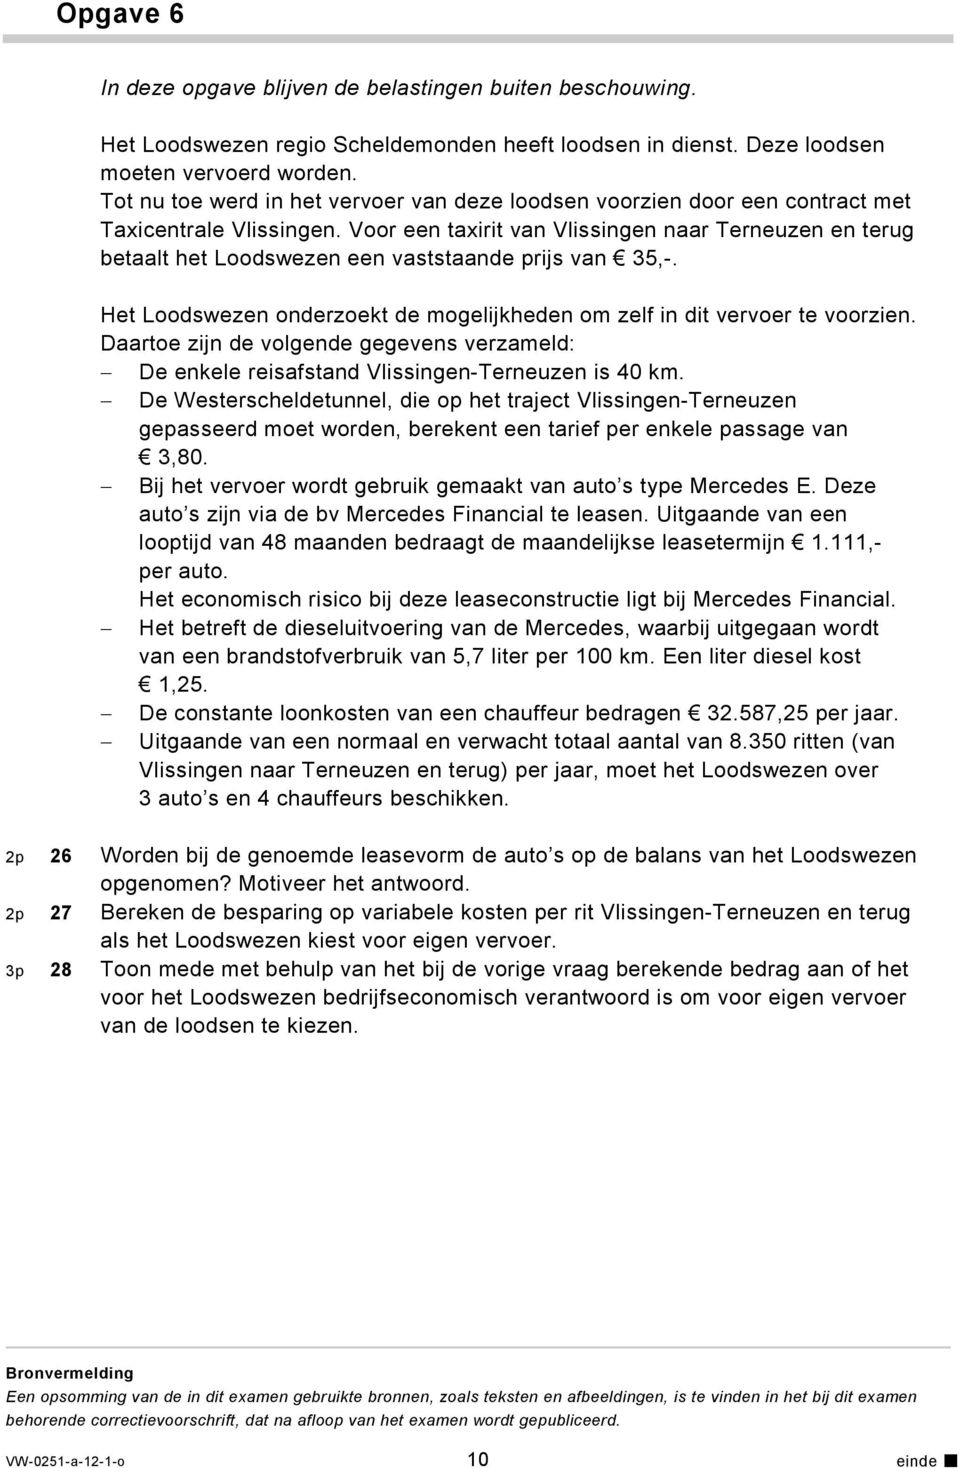 Voor een taxirit van Vlissingen naar Terneuzen en terug betaalt het Loodswezen een vaststaande prijs van 35,-. Het Loodswezen onderzoekt de mogelijkheden om zelf in dit vervoer te voorzien.